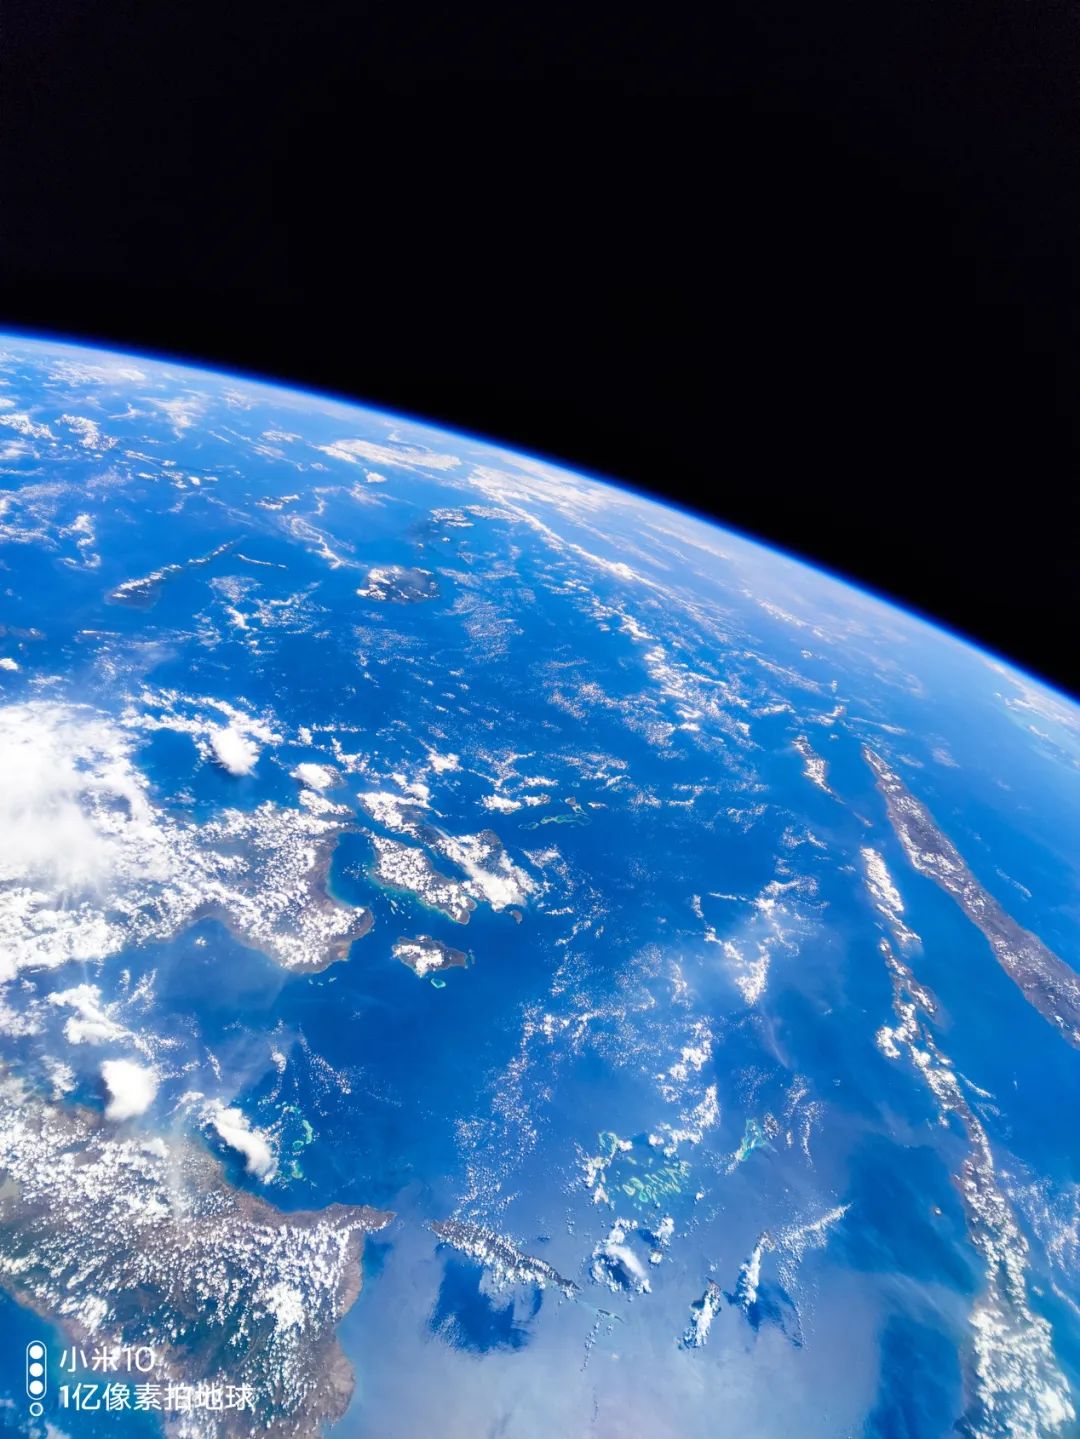 这次发布会的主视觉,有一个漂亮的蓝色星球背景,用的就是我们1亿像素